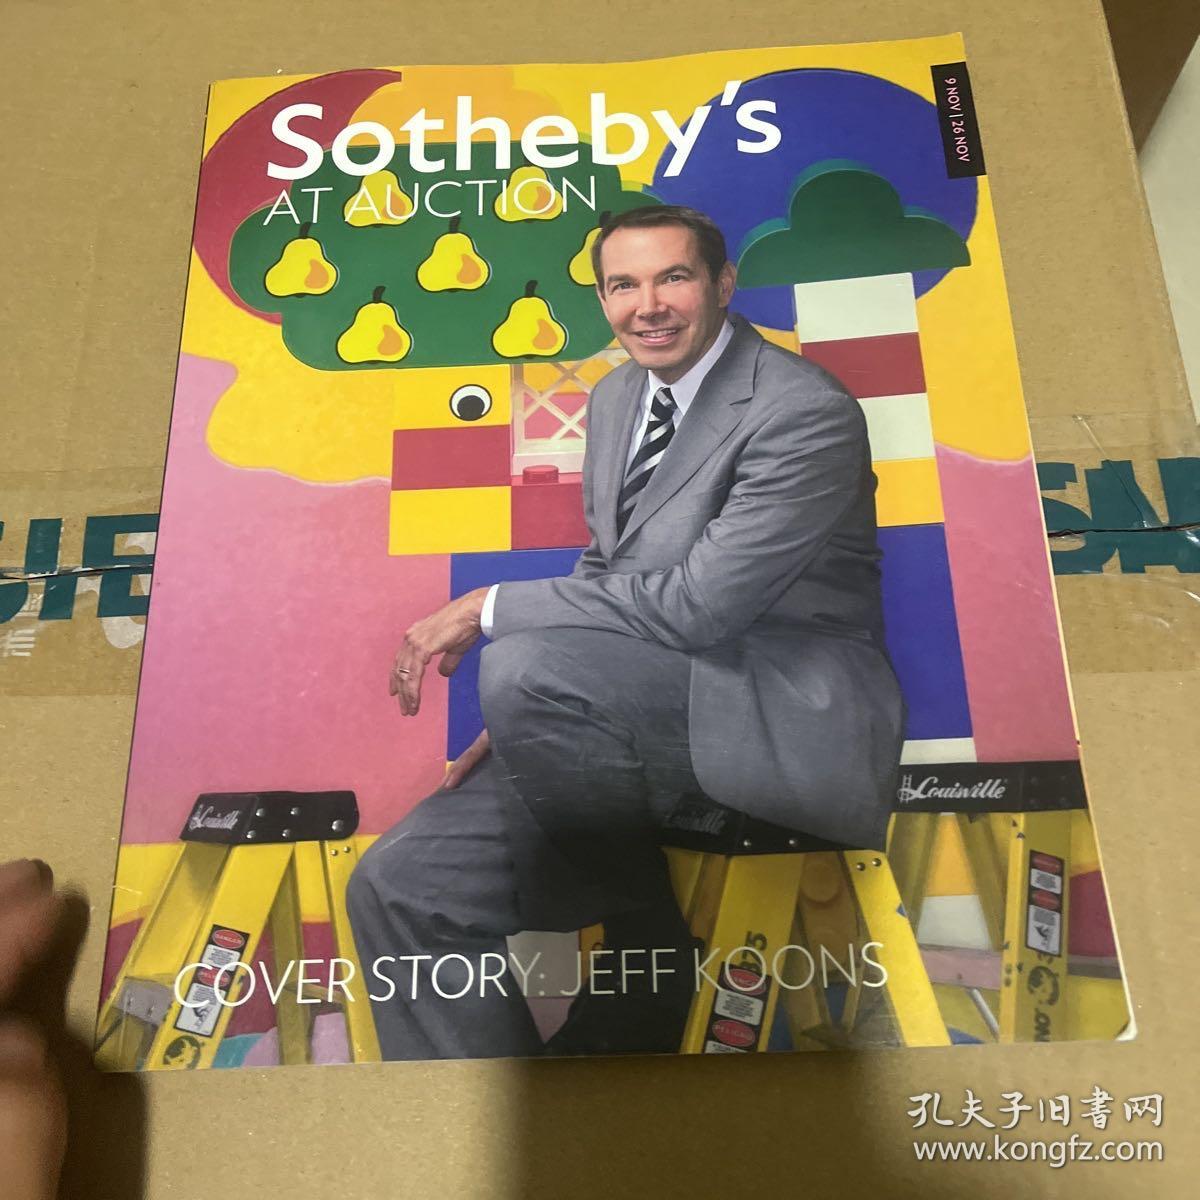 苏富比 2009年 Sotheby's AT AUCTION COVER STORY:JEFF KOONS